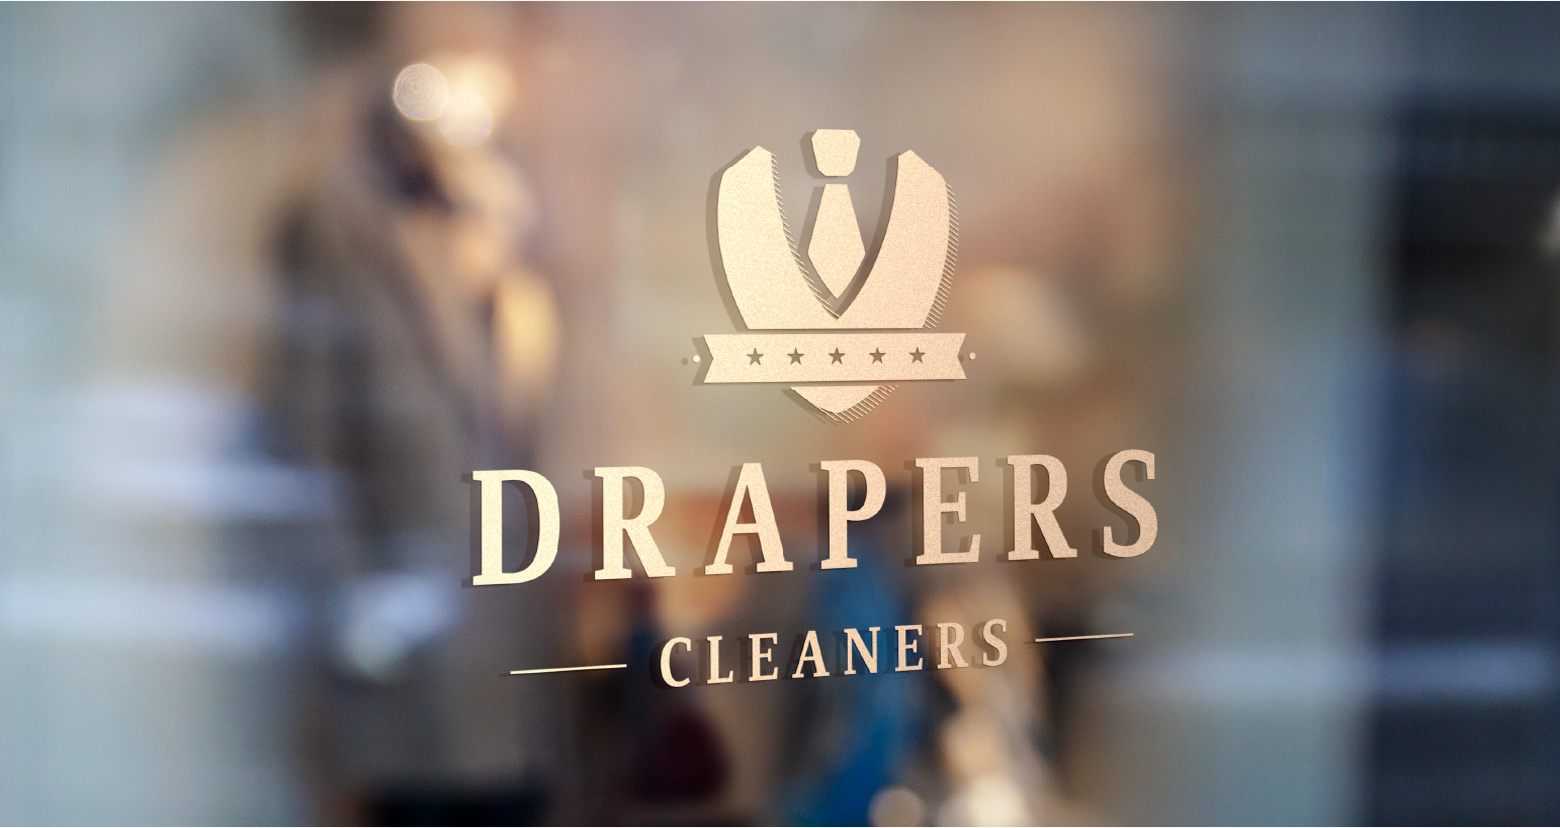 Drapers logo on glass door